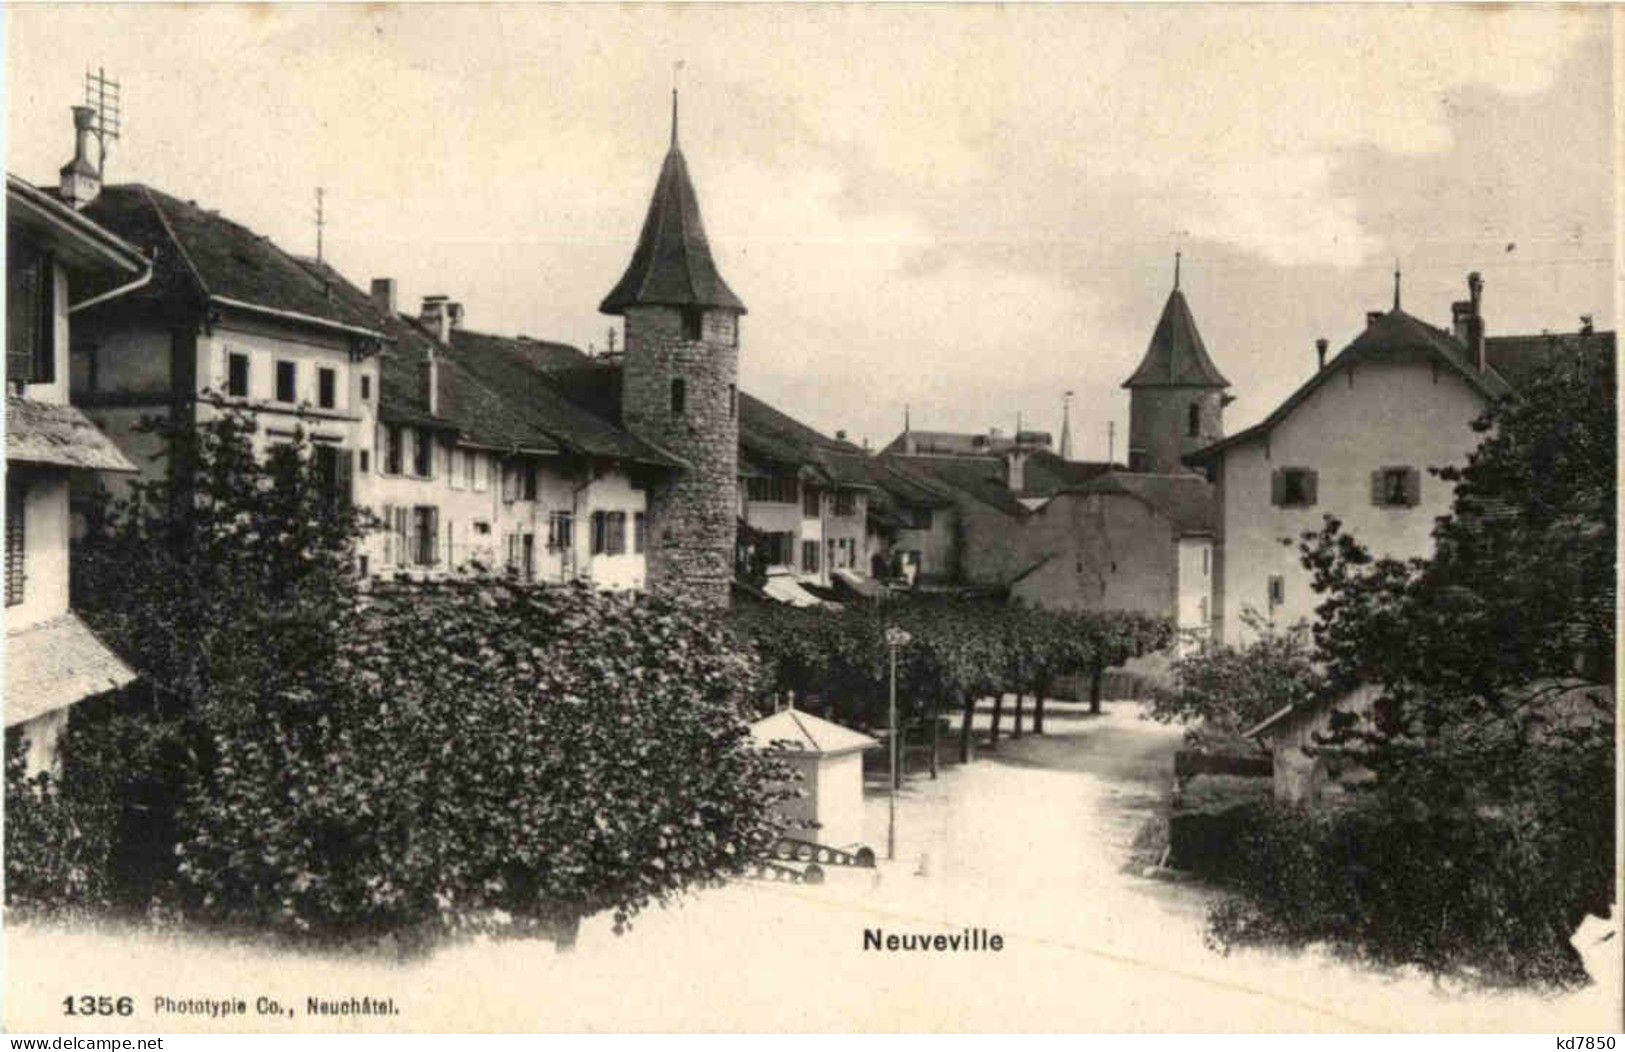 Neuveville